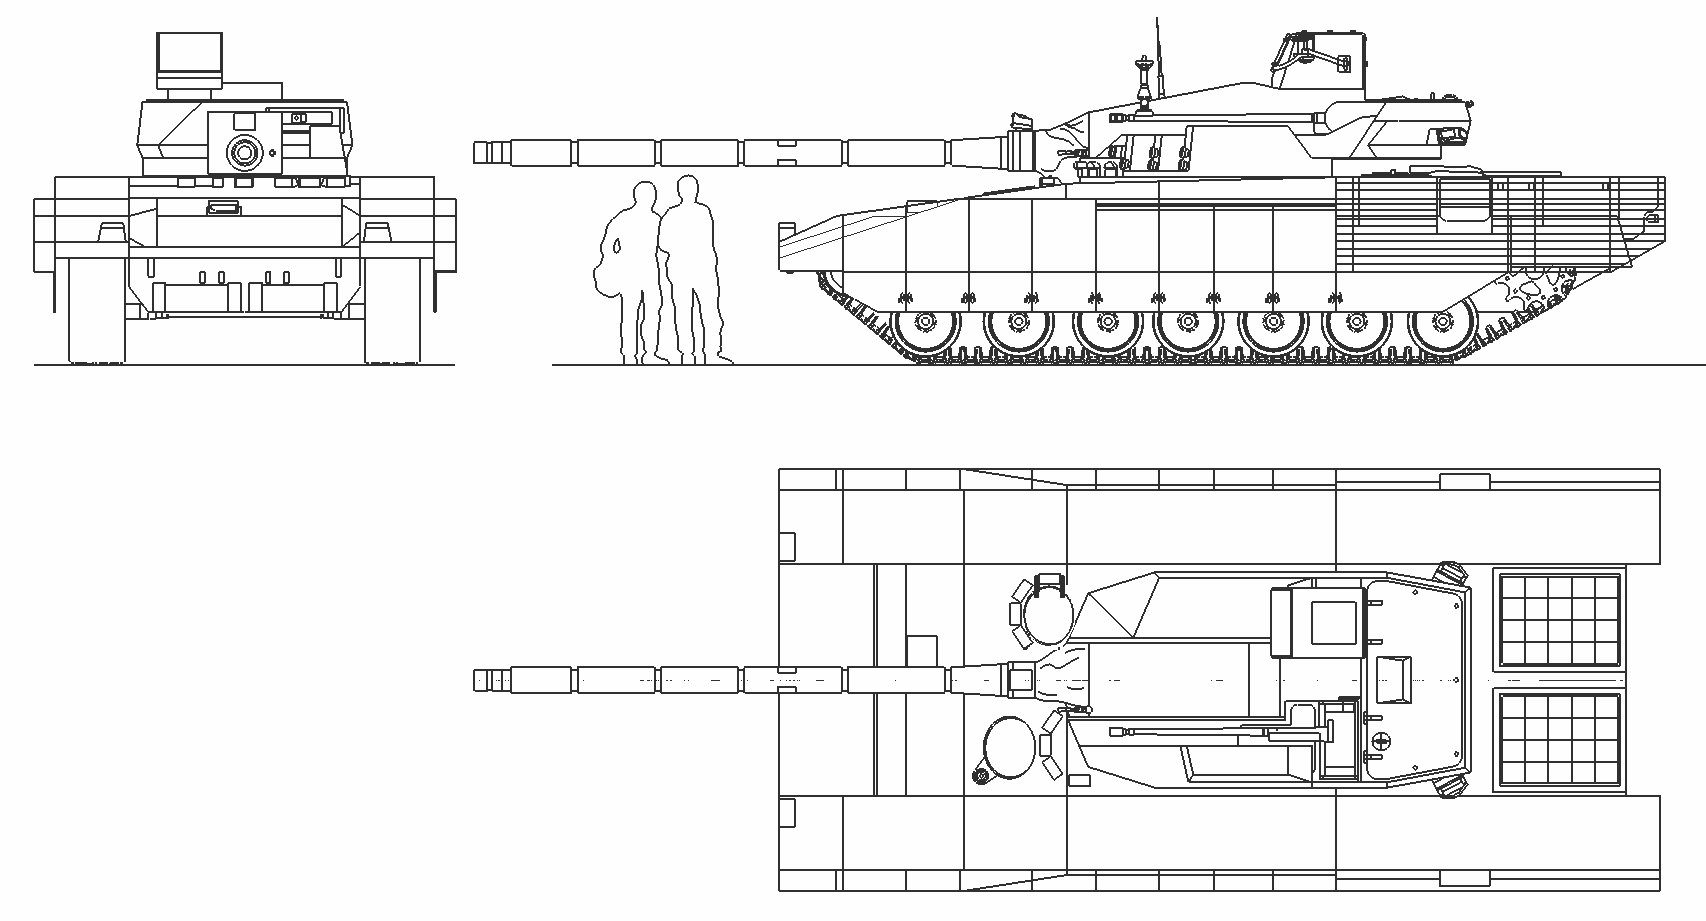 T-14 Armata blueprint